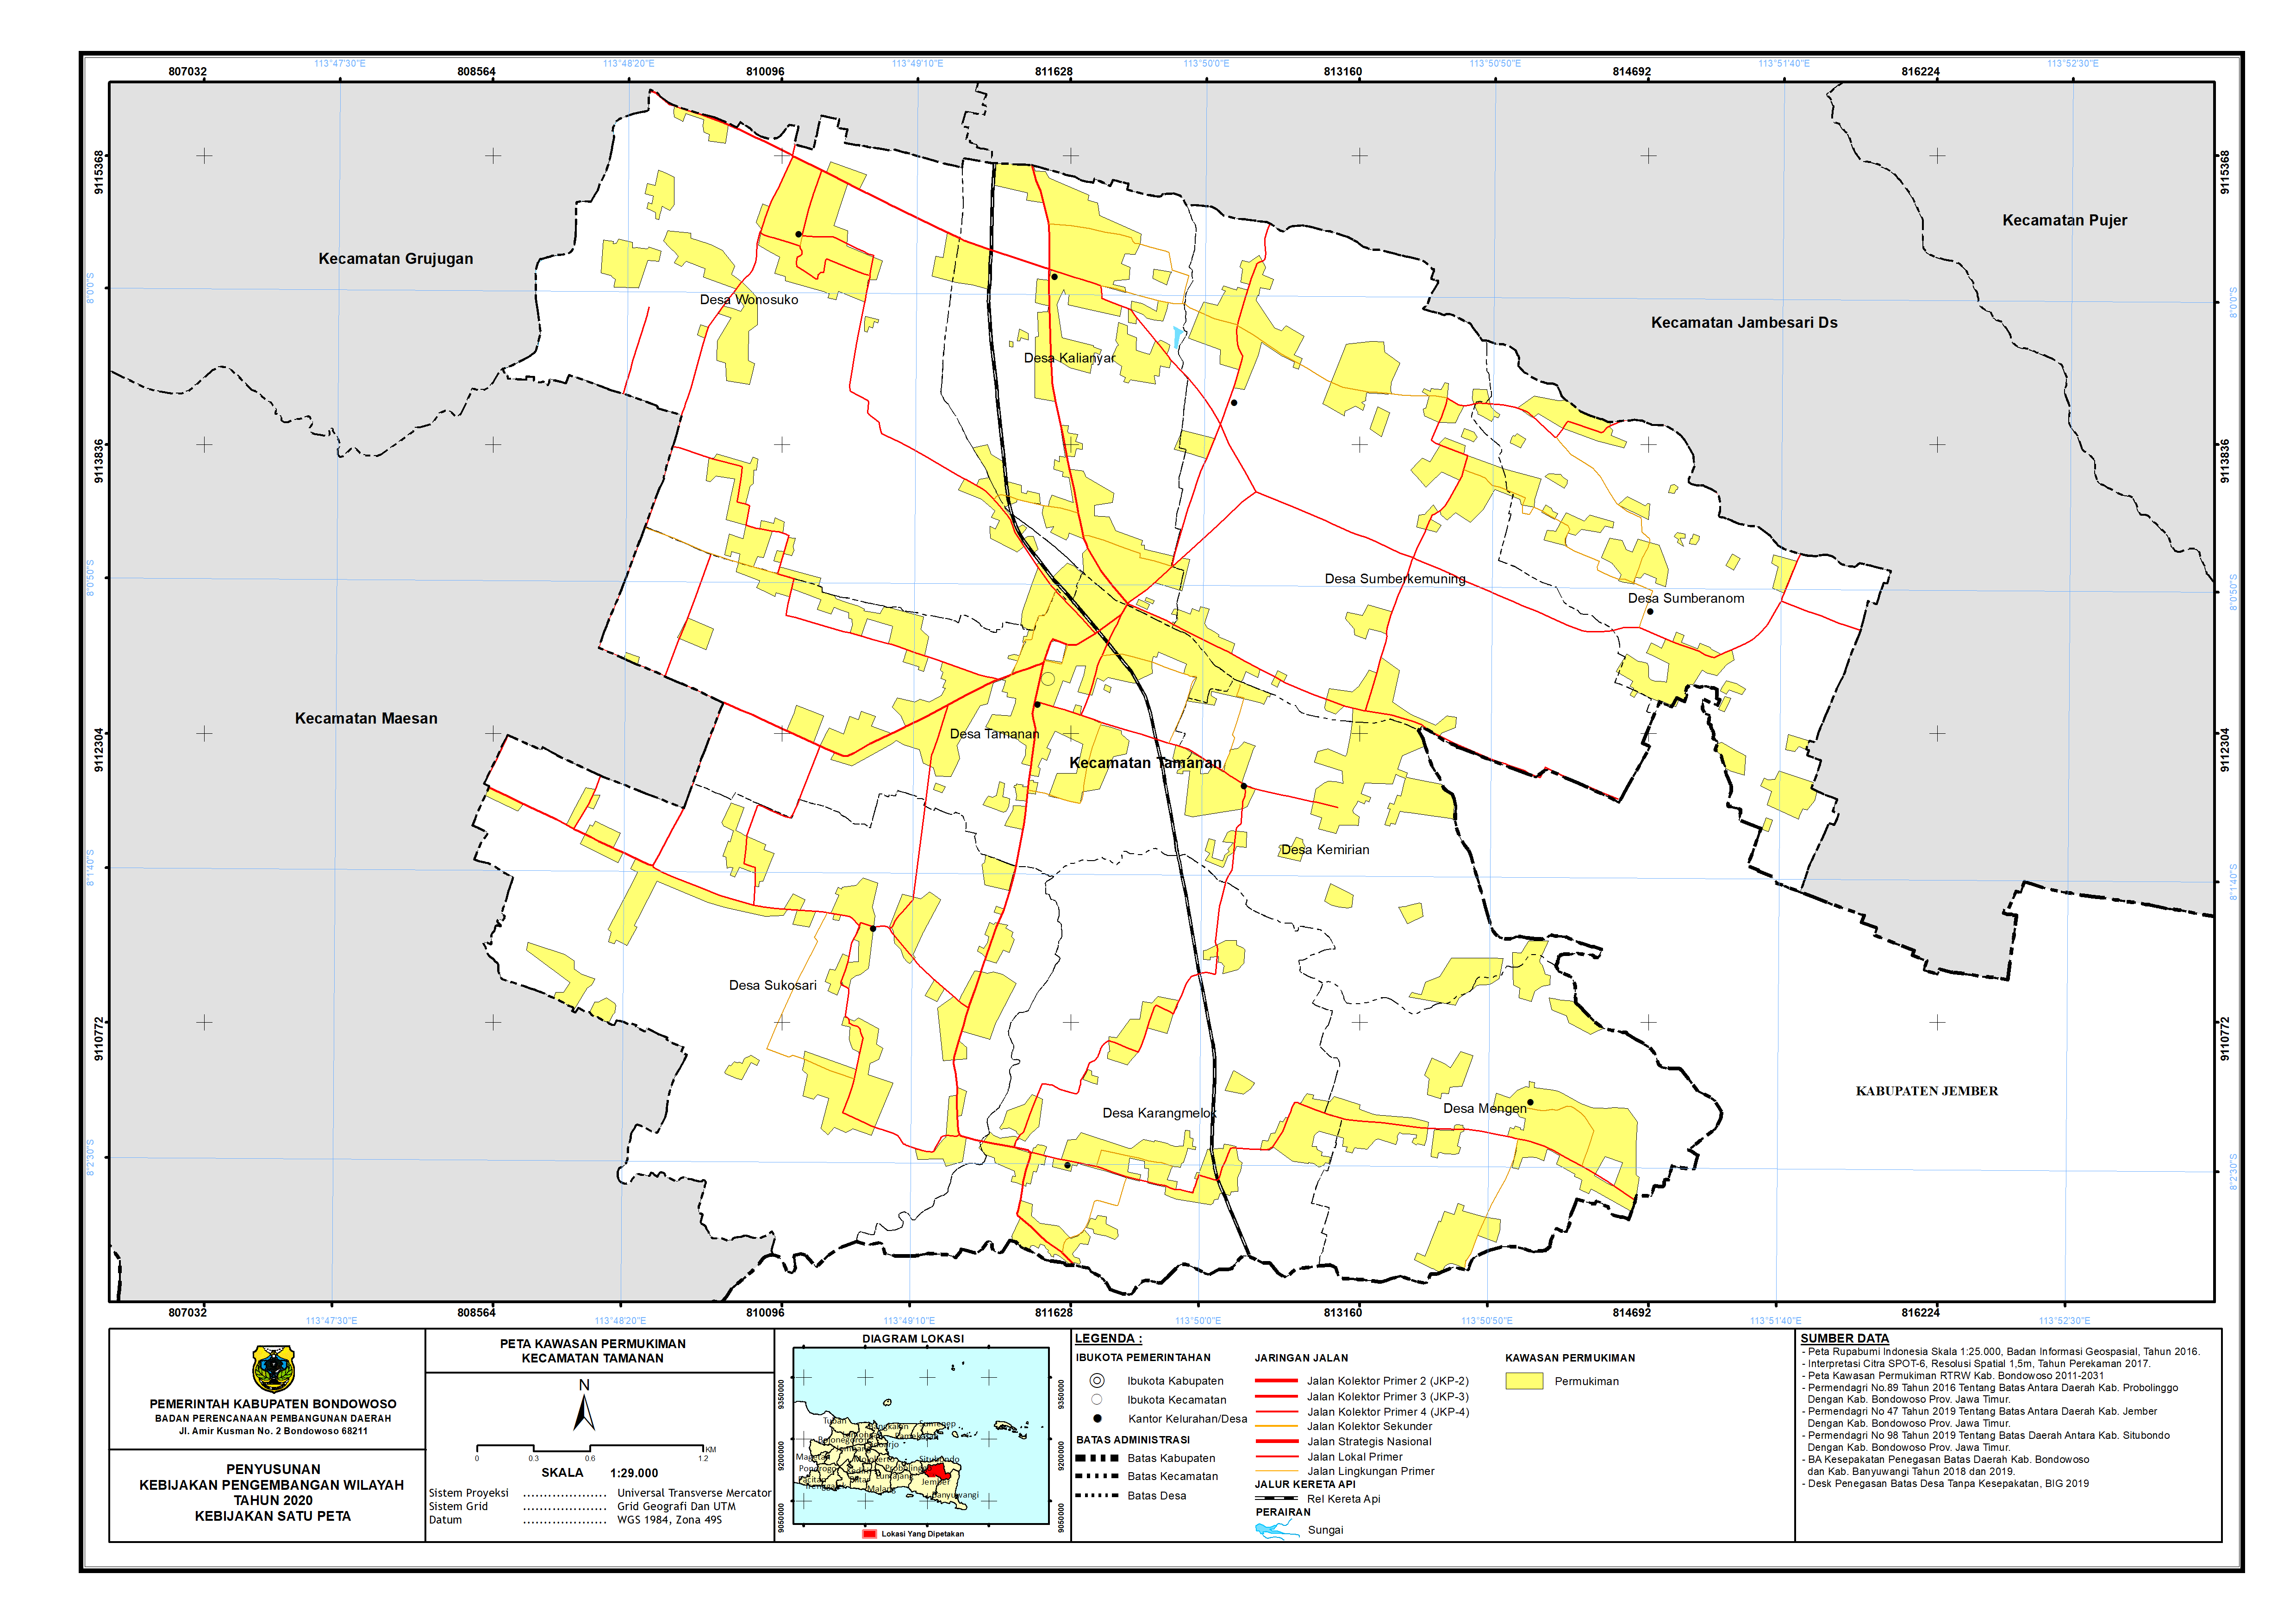 Peta Kawasan Permukiman Kecamatan Tamanan.png